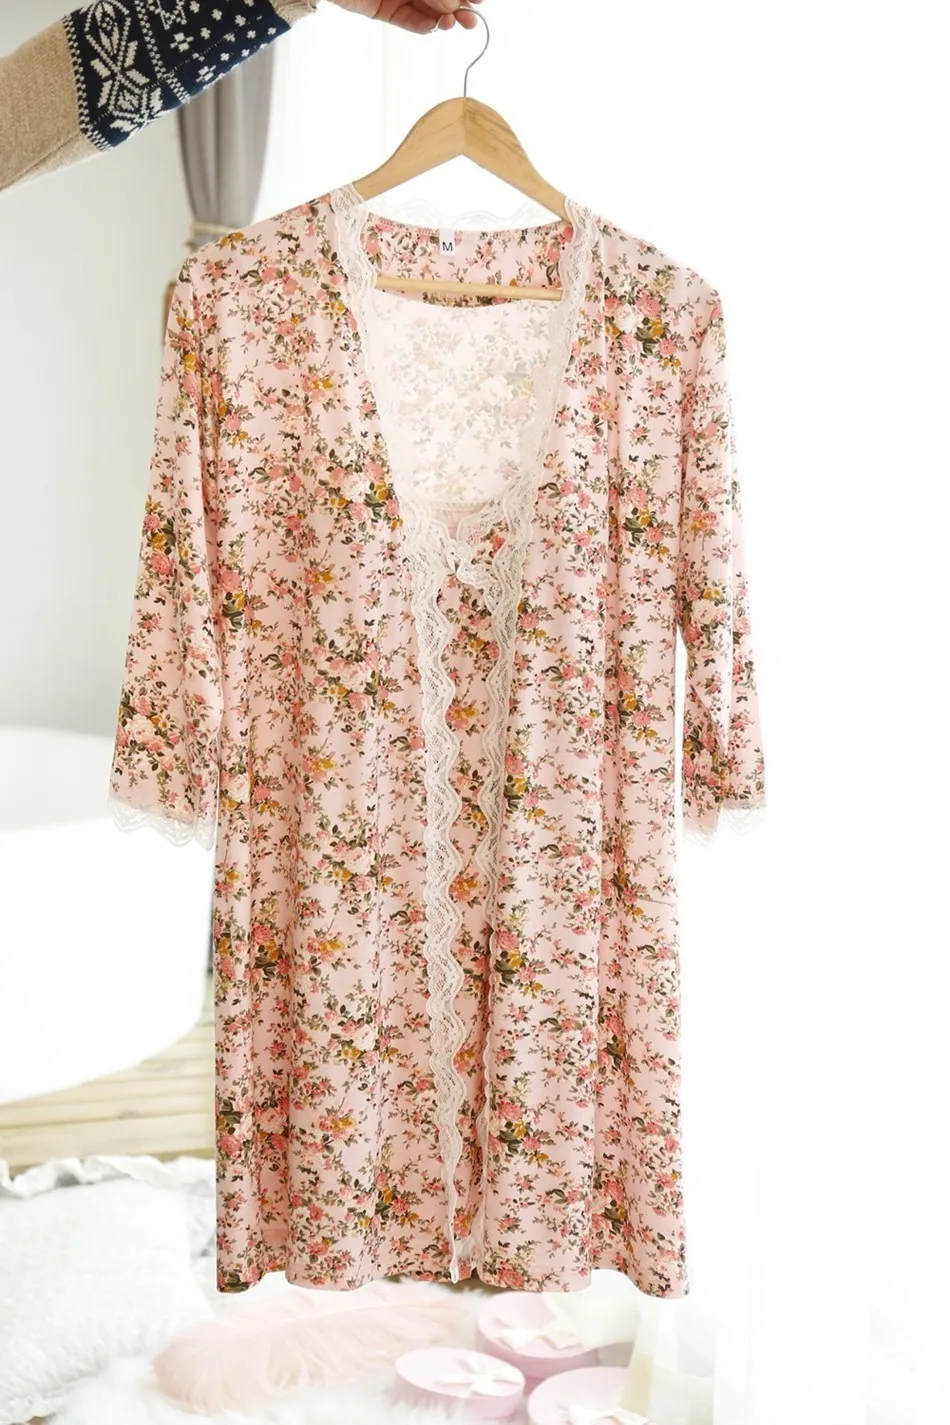 Пикантный женский ночной халат из двух предметов,, г., хлопковая миниатюрная ночная рубашка принцессы с цветочным рисунком цена, Лидер продаж